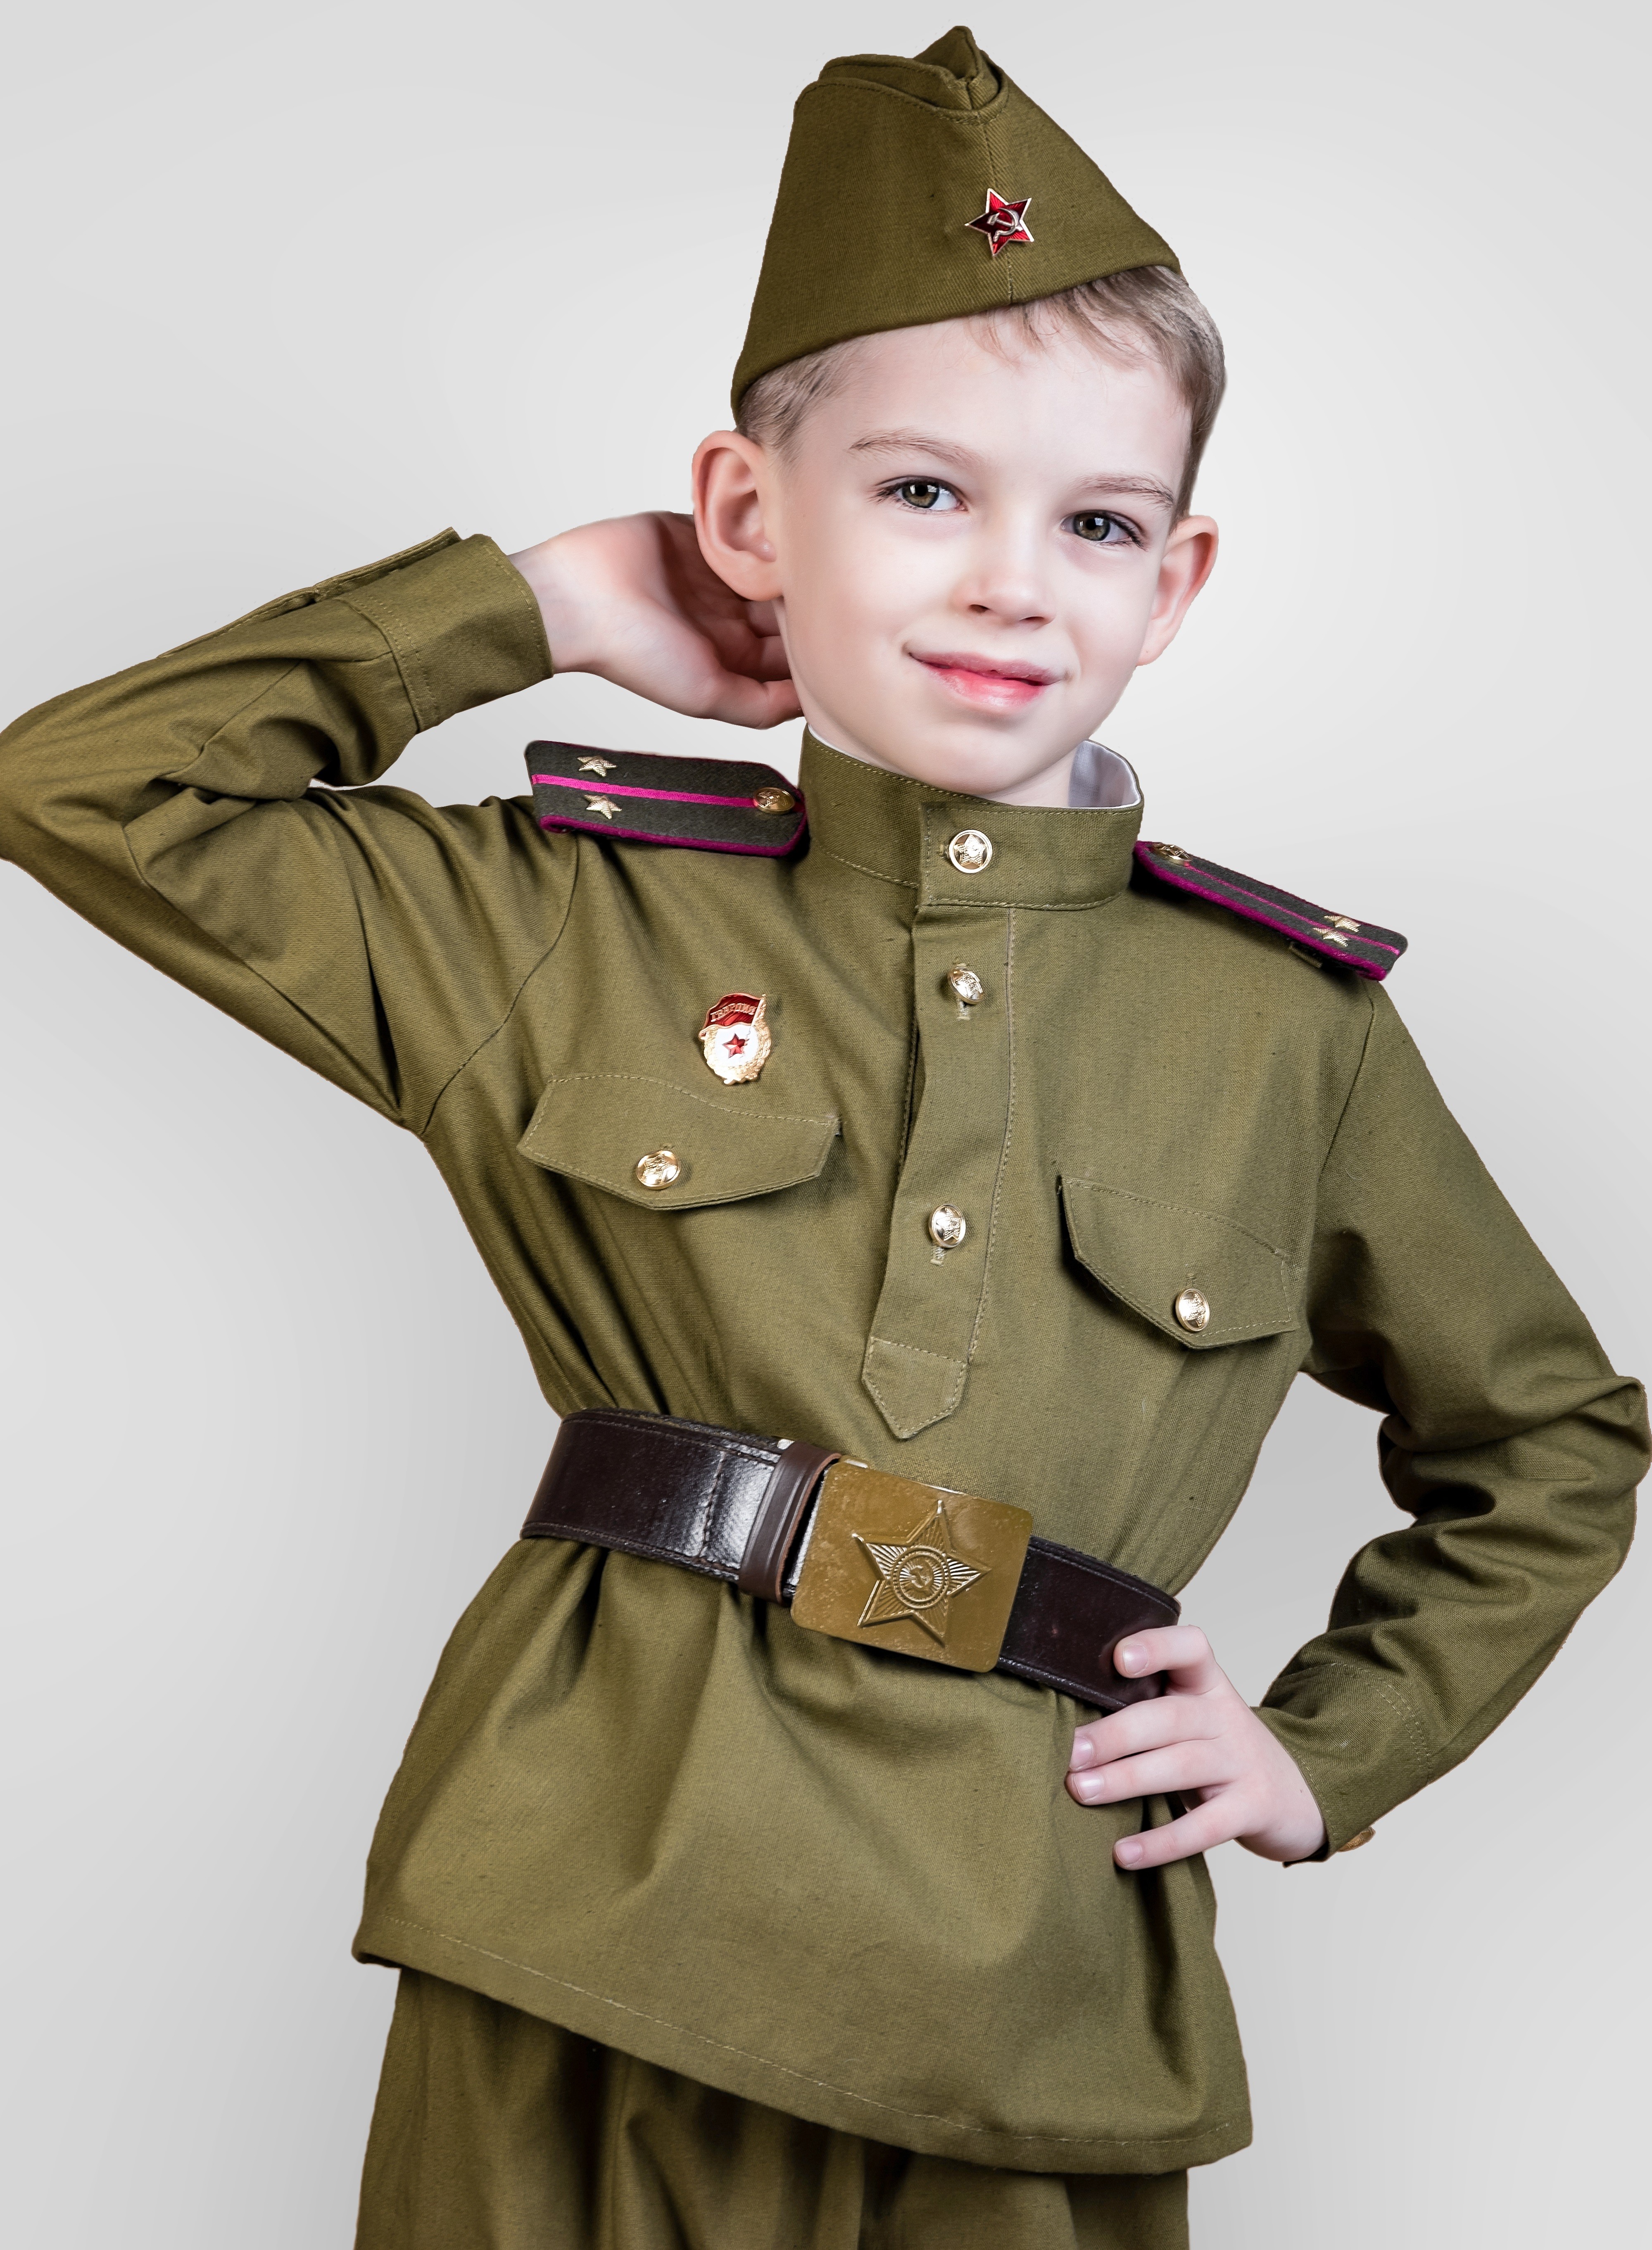 Военная форма недорого. Дети в военной форме. Детская Военная форма. Солдатская форма для детей. Военнаяыорма для ребенка.